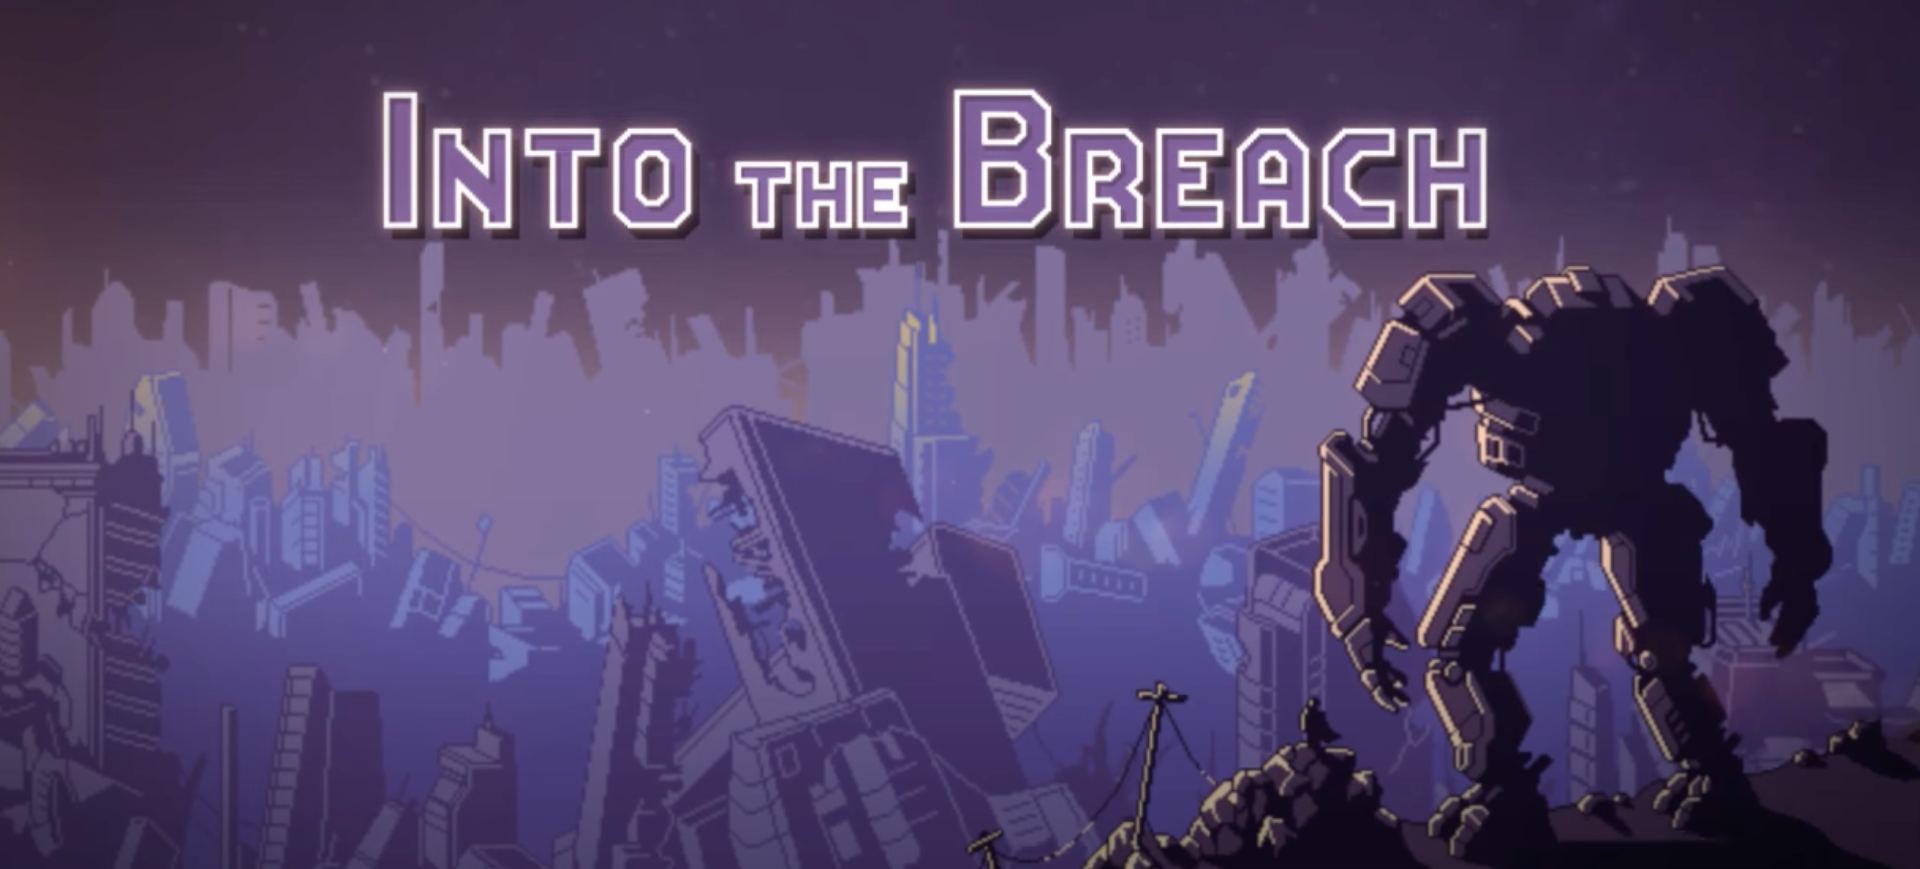 Into the Breach, game indie que será lançado na versão mobile exclusiva da Netflix